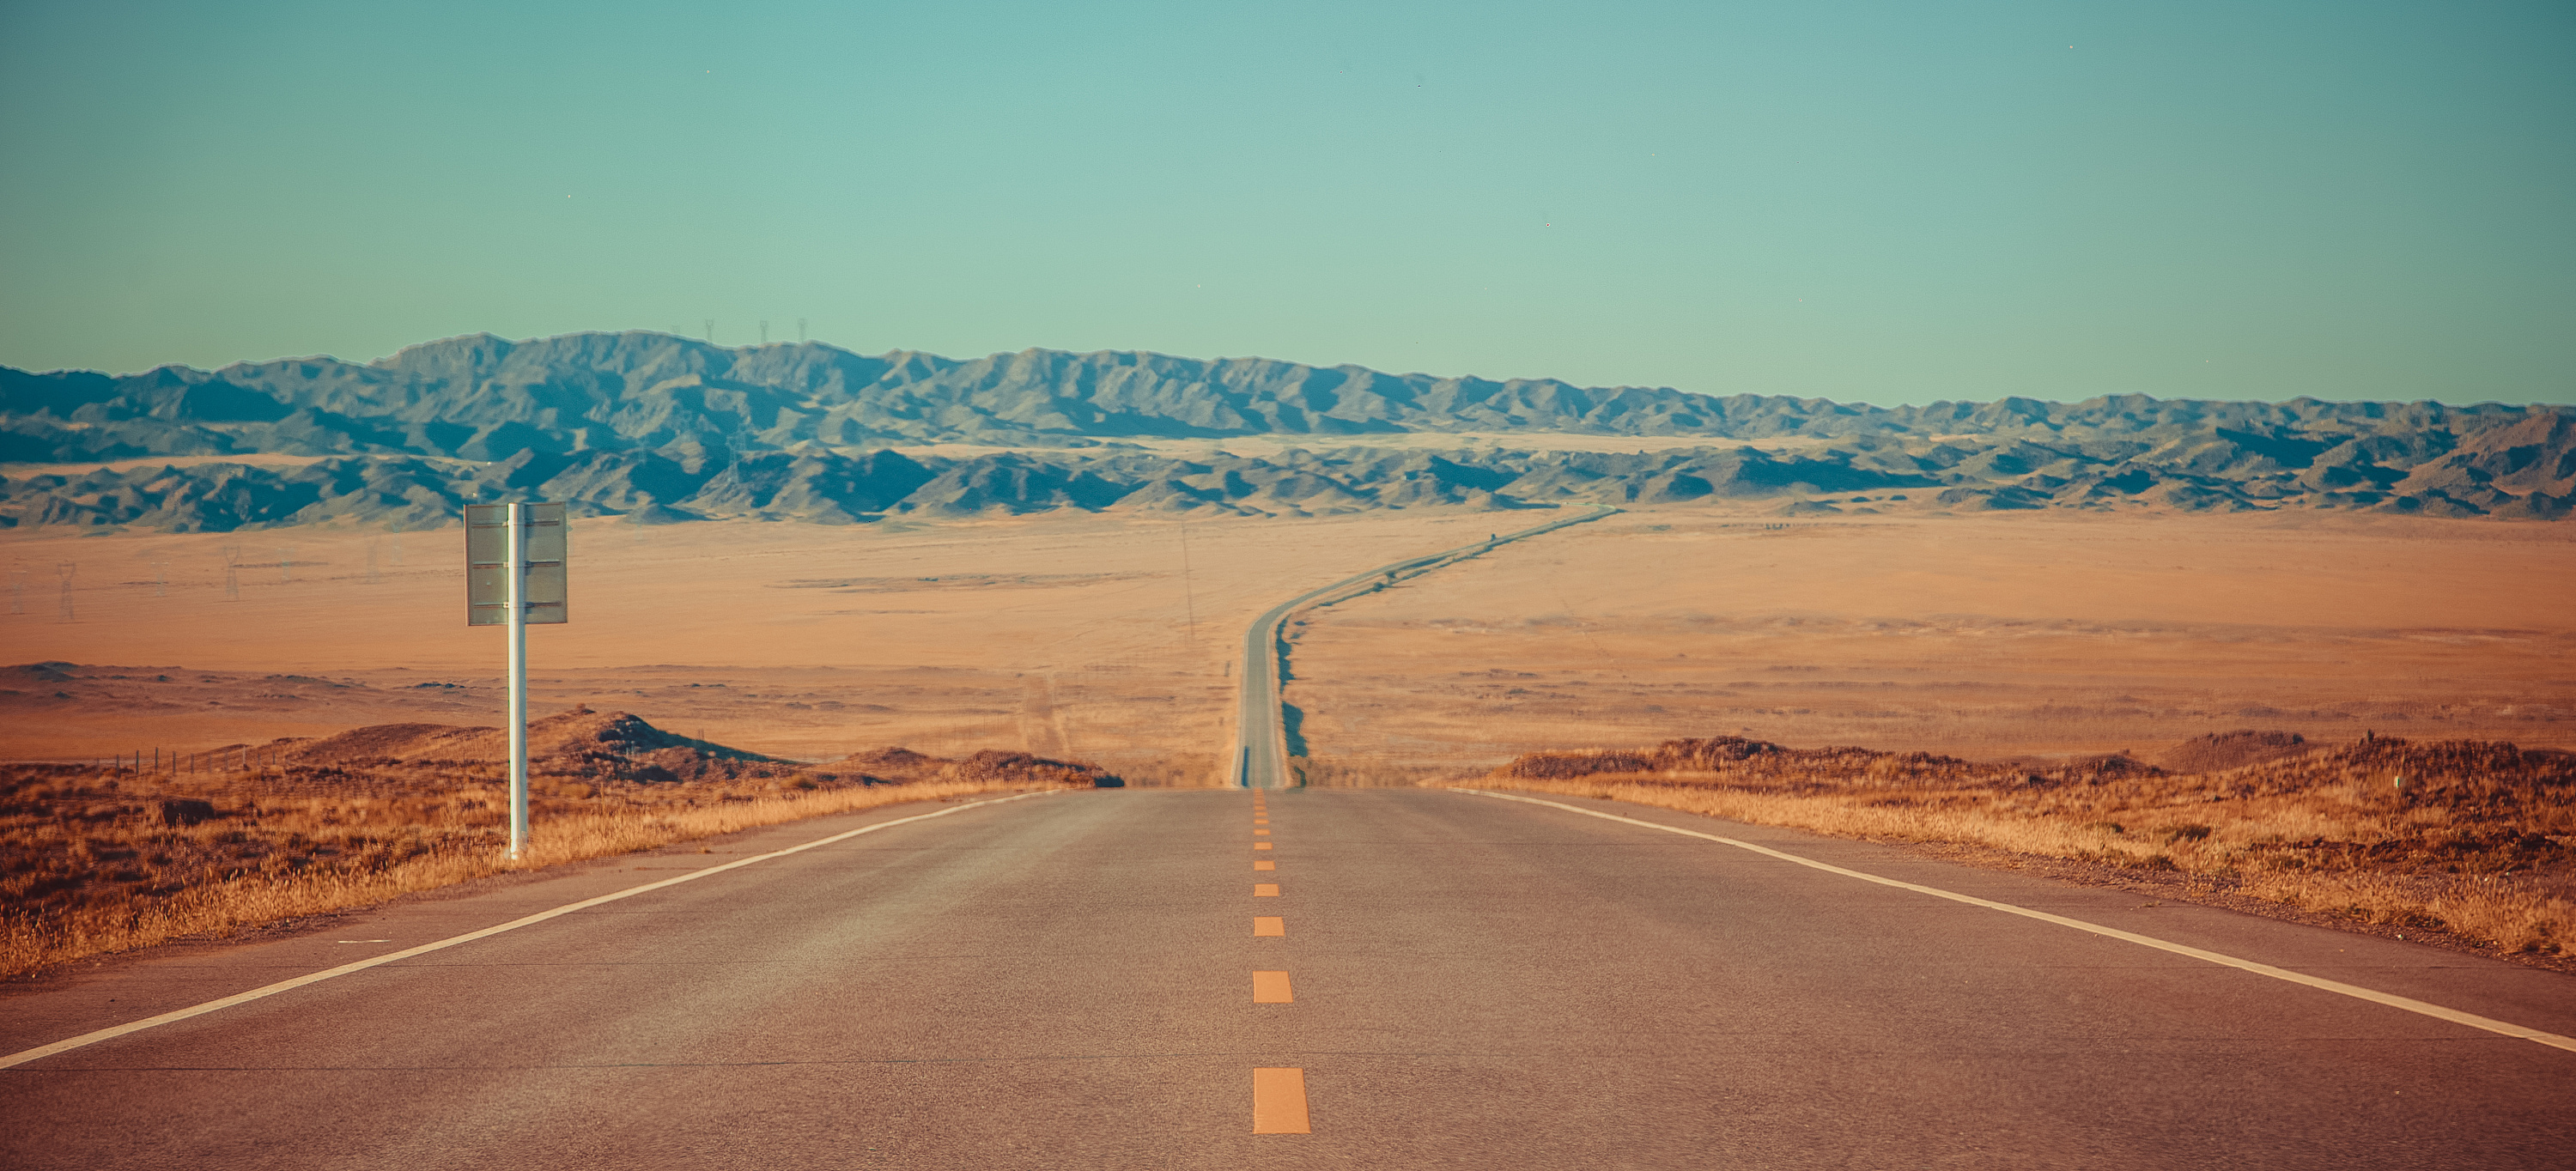 国内第一条穿越沙漠腹地高速公路——乌玛高速青铜峡至中卫段